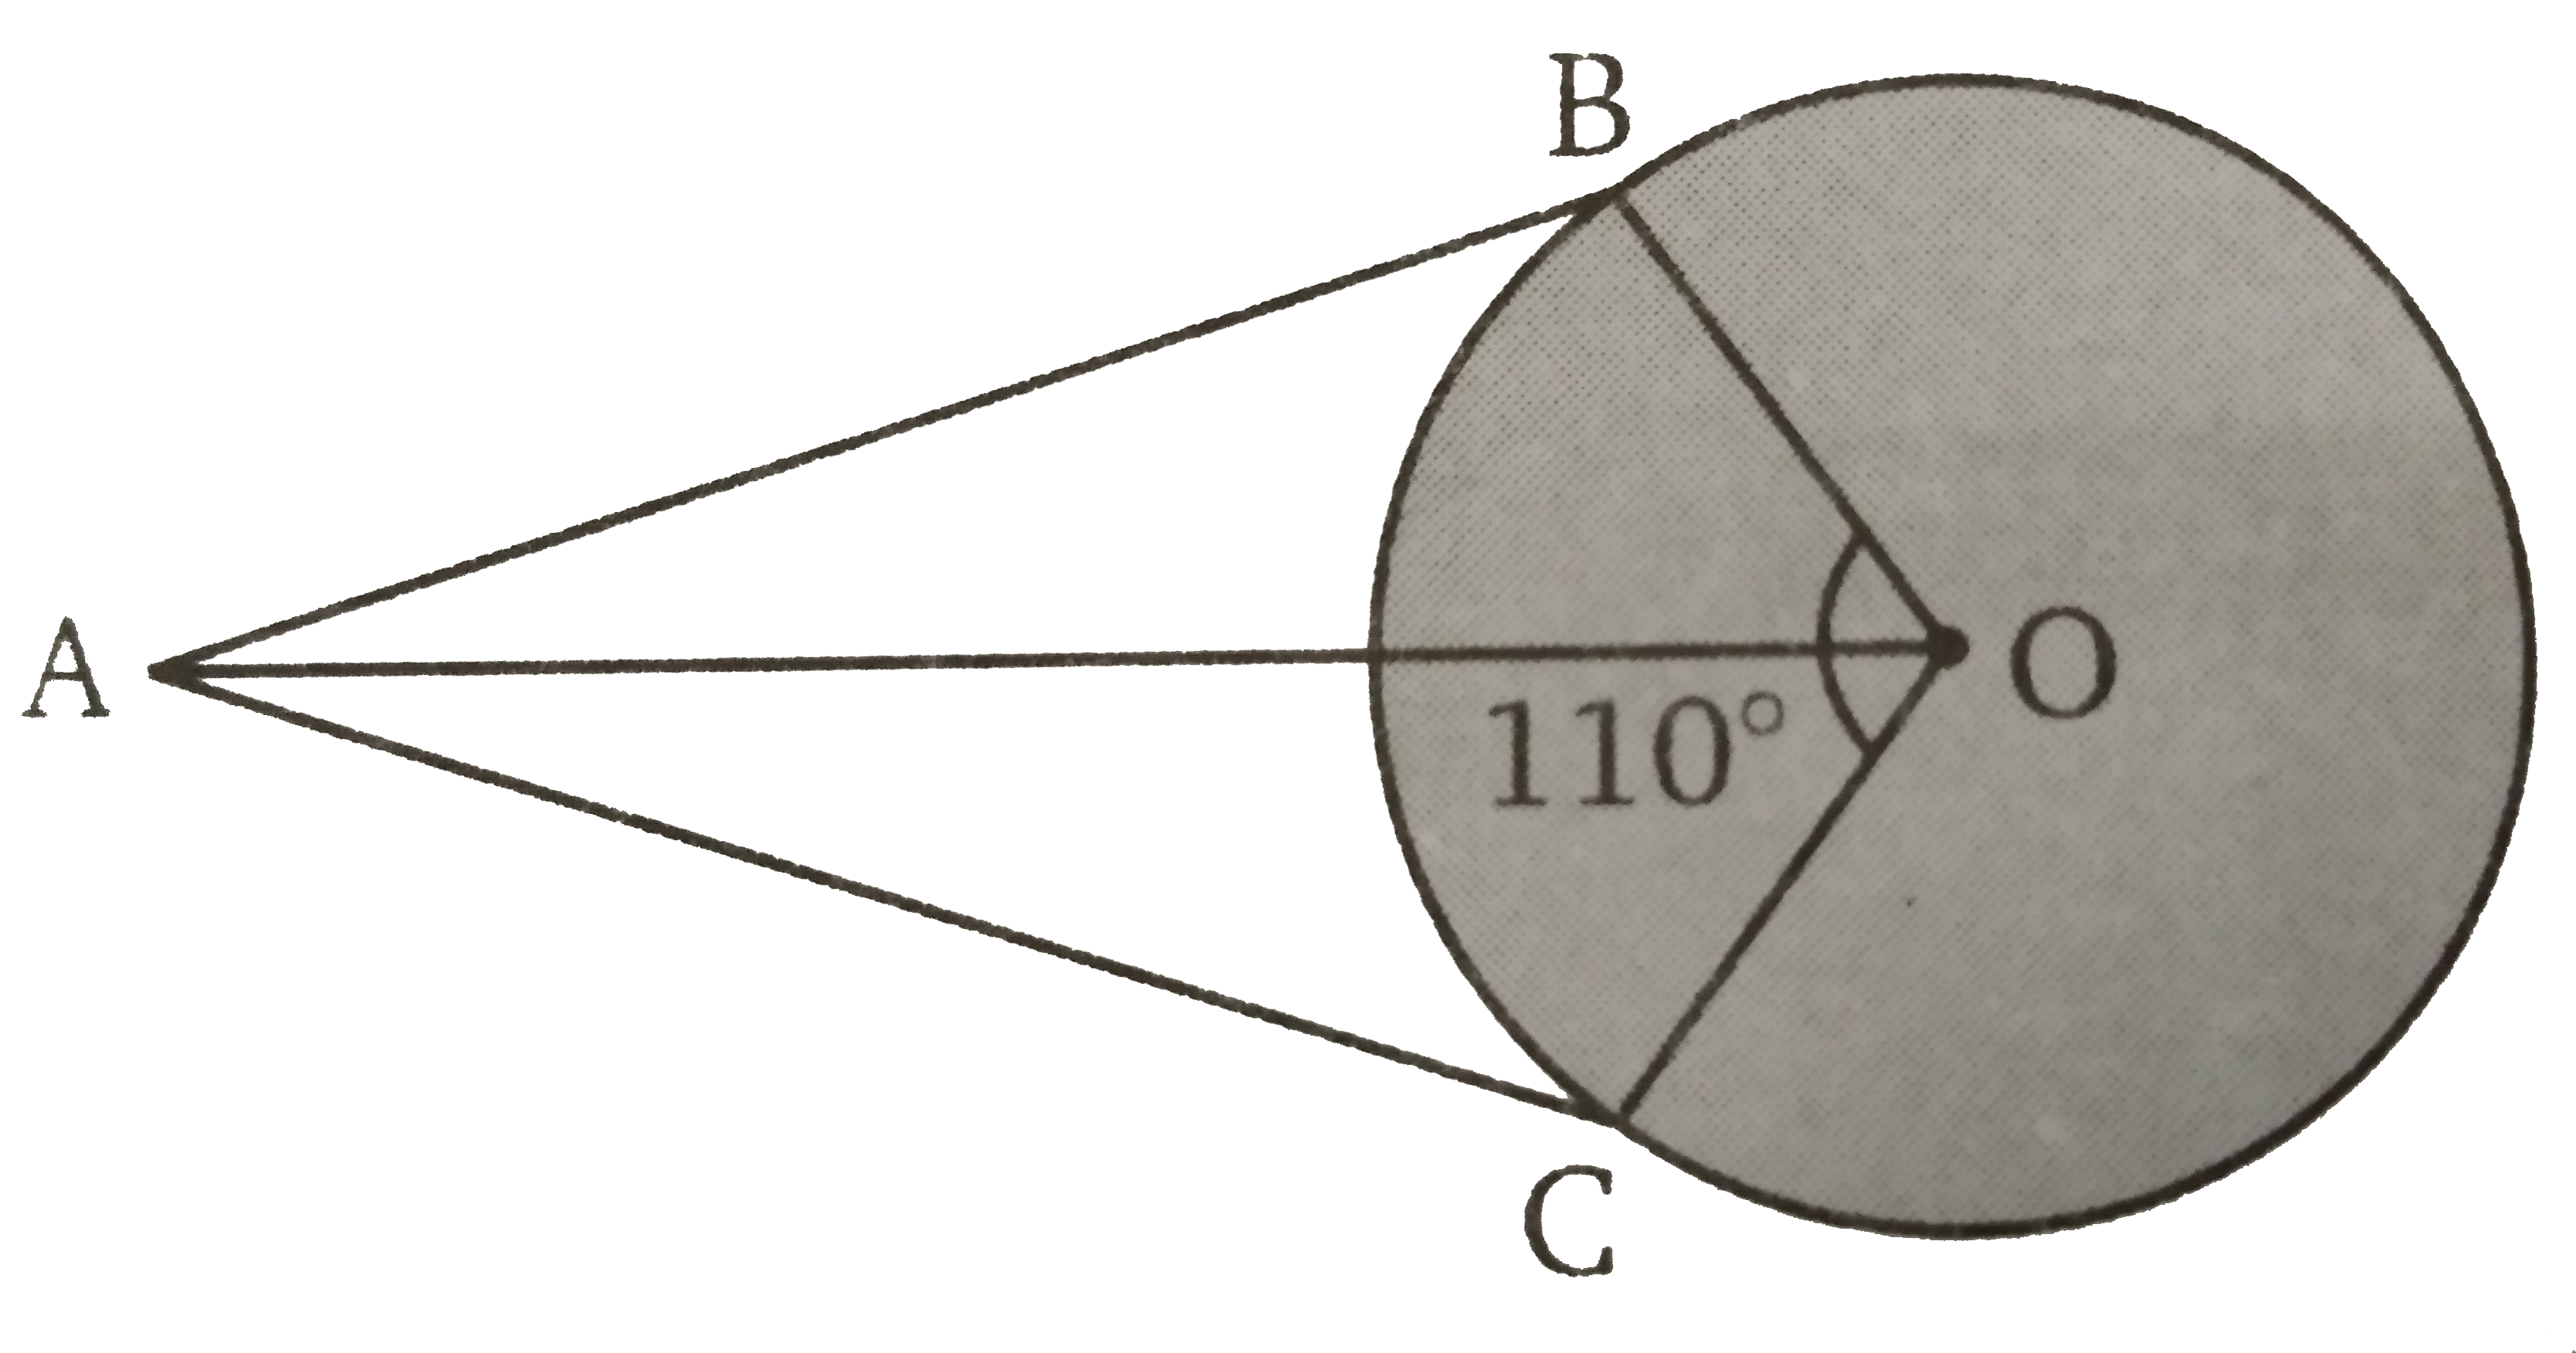 संलग्न  चित्र में O  वृत्त का केंद्र है। यदि angle BOC = 110^(@)  और AB  तथा AC  वृत्त की स्पर्श रेखाएँ हैं तो angle OAB  की माप ज्ञात कीजिए ।